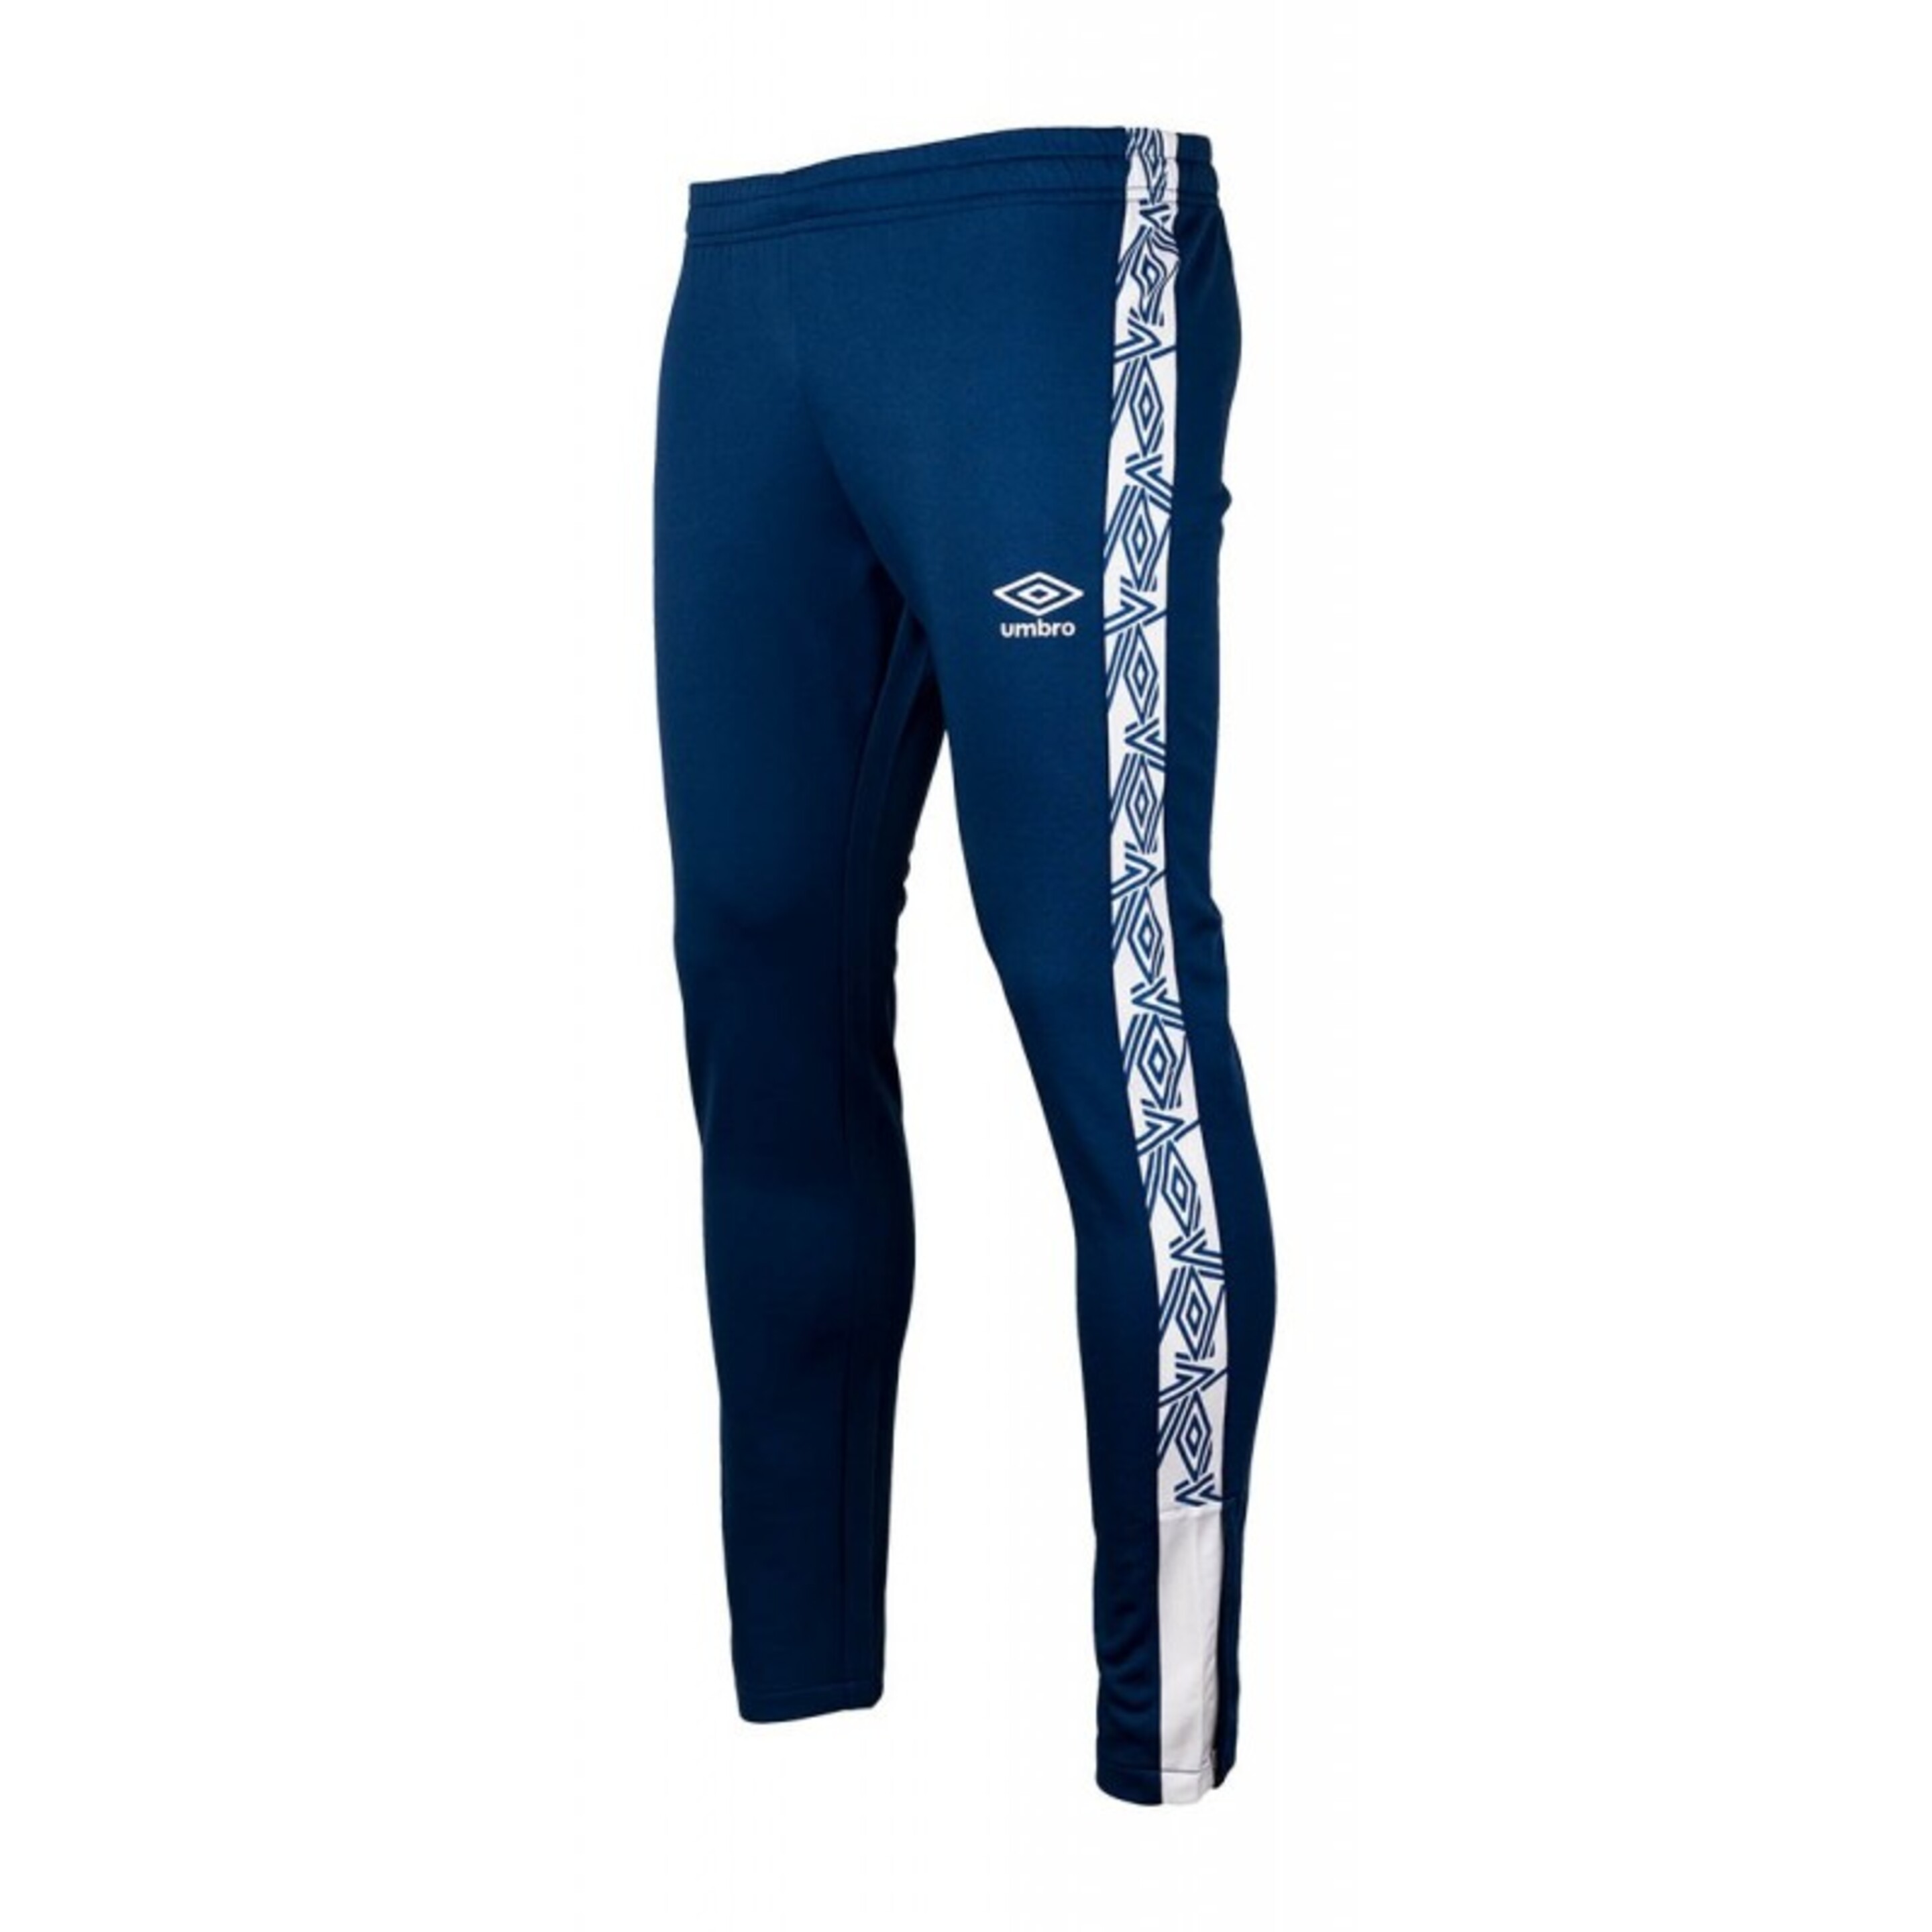 Pantalón Eyre Logo Umbro - azul-blanco - 